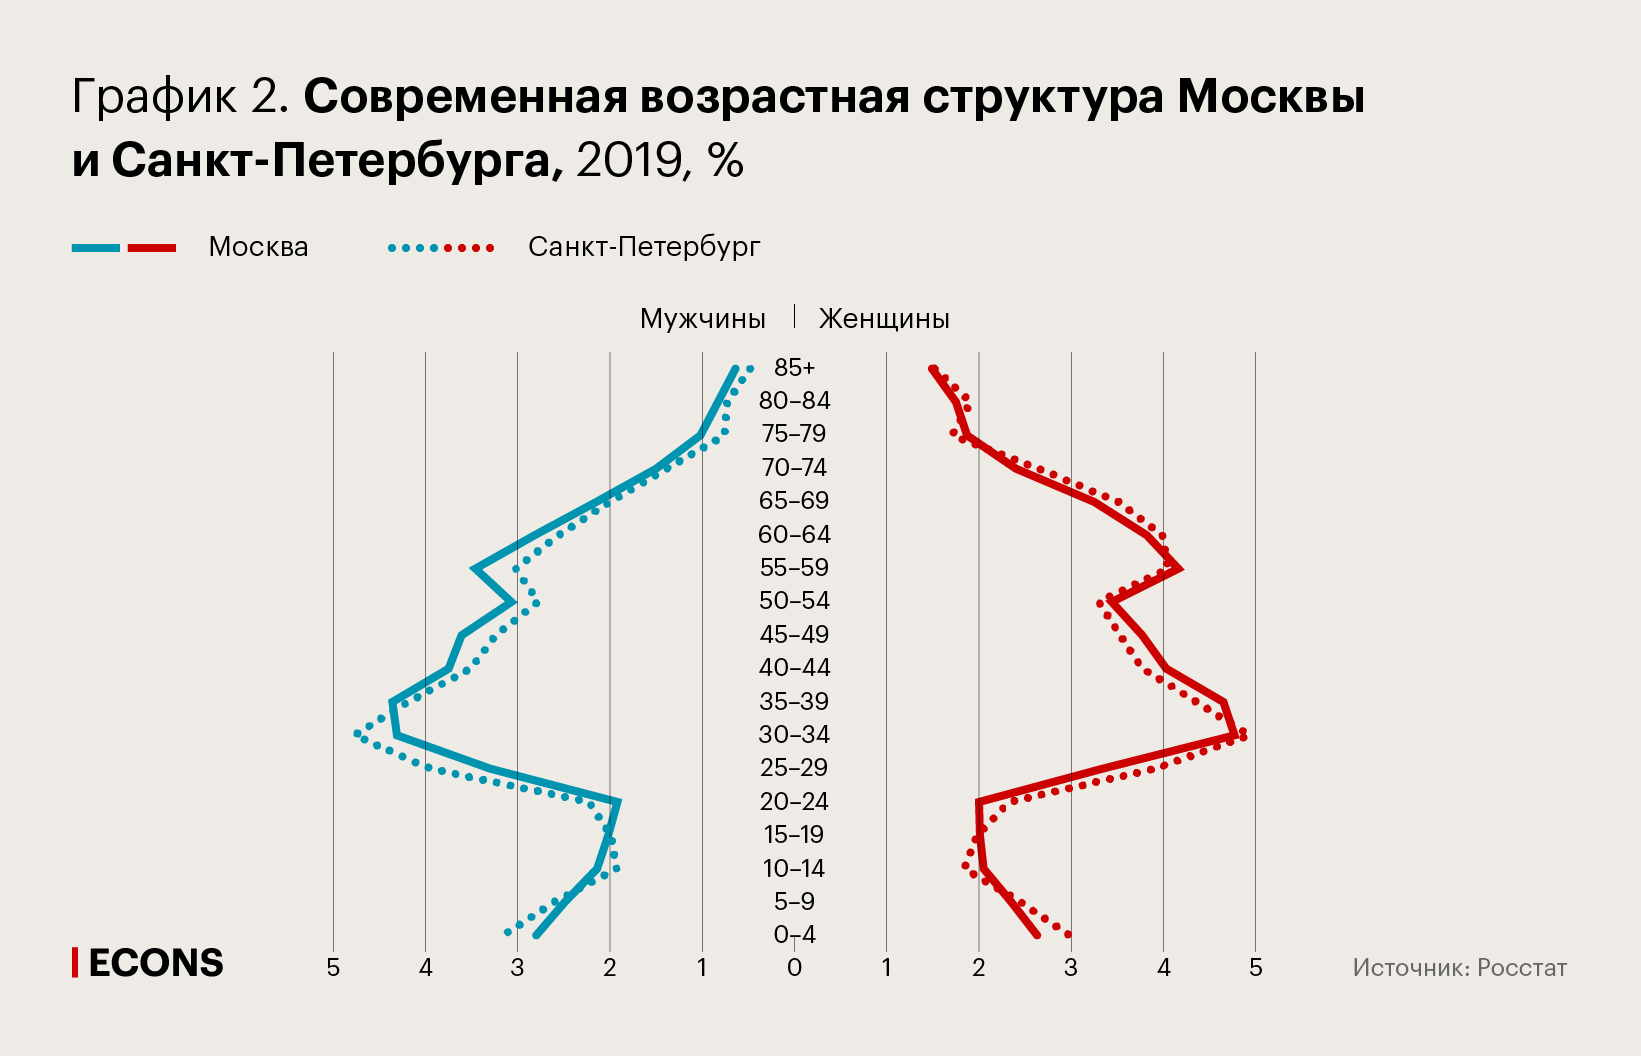 Современная возрастная структура Москвы и Санкт-Петербурга, 2019 г., %